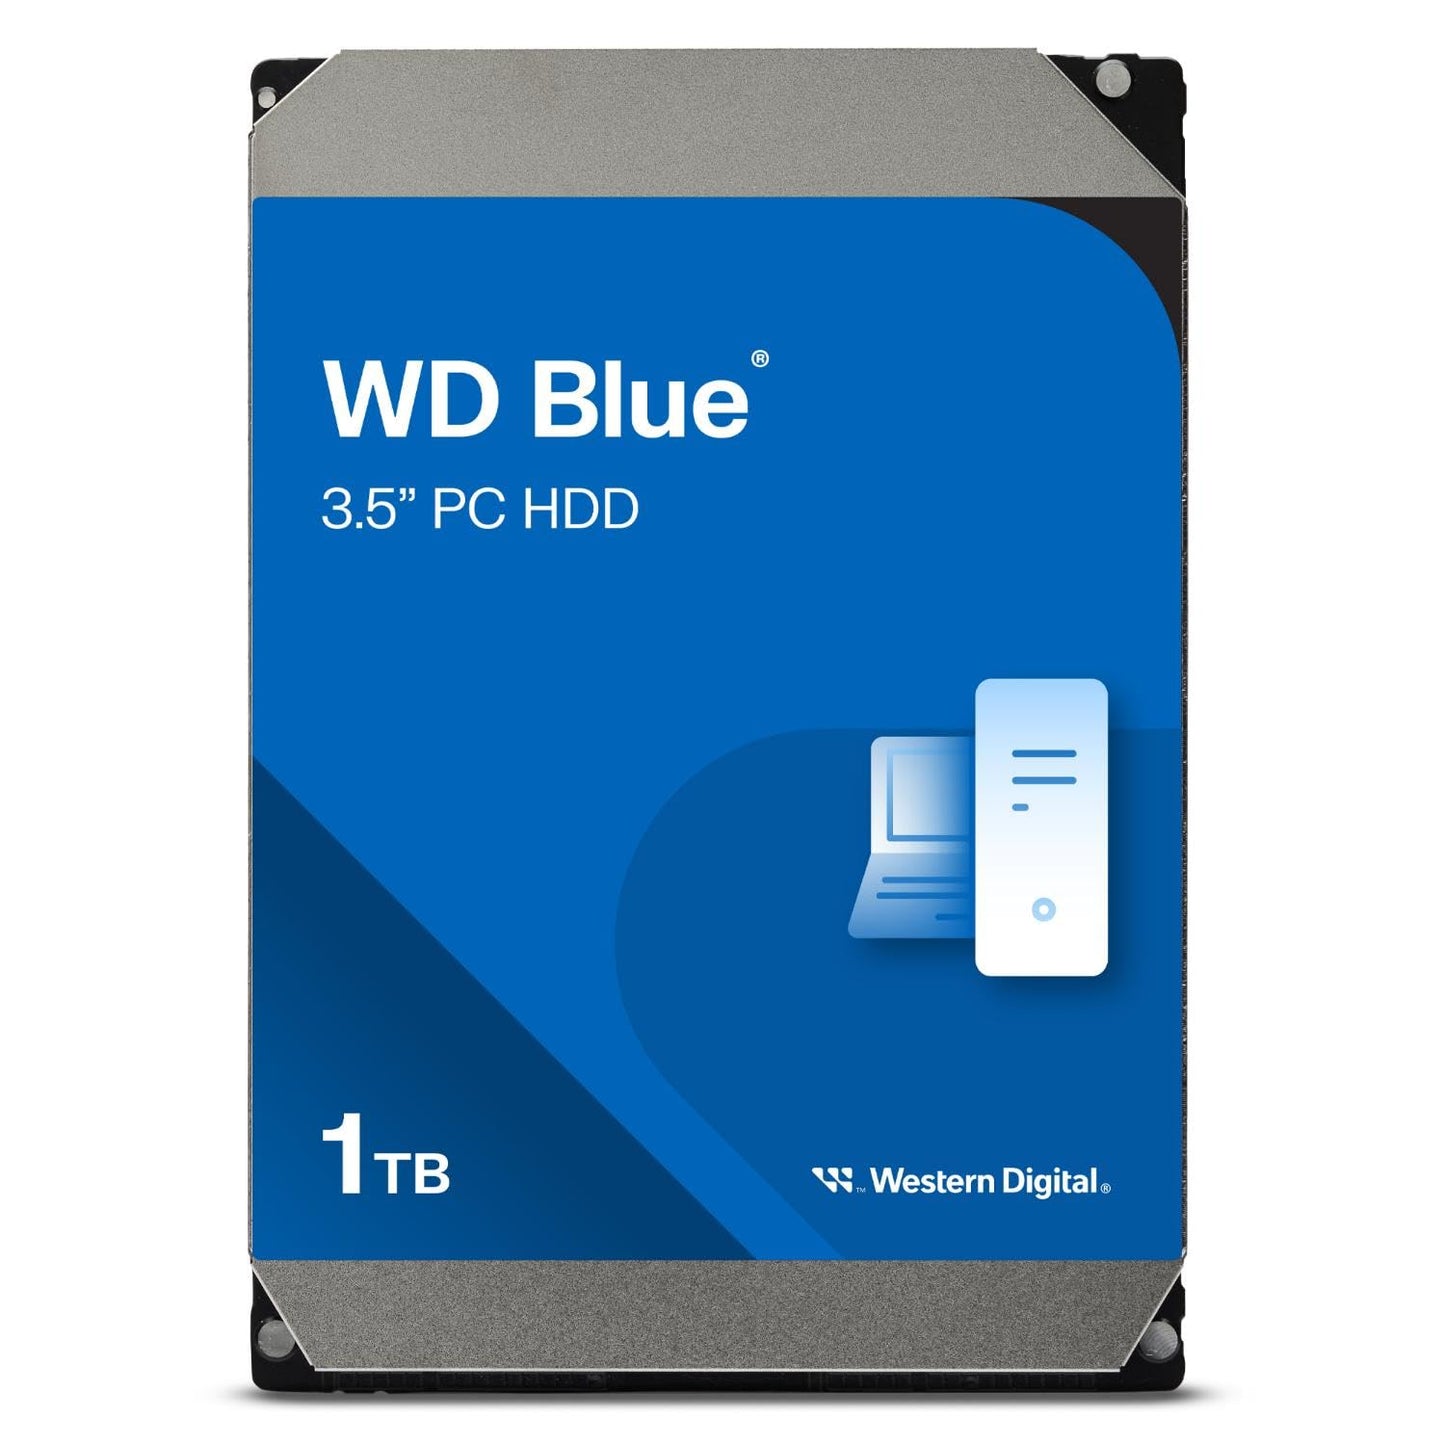 WD Blue™ 1TB 7200 RPM Desktop Internal HDD